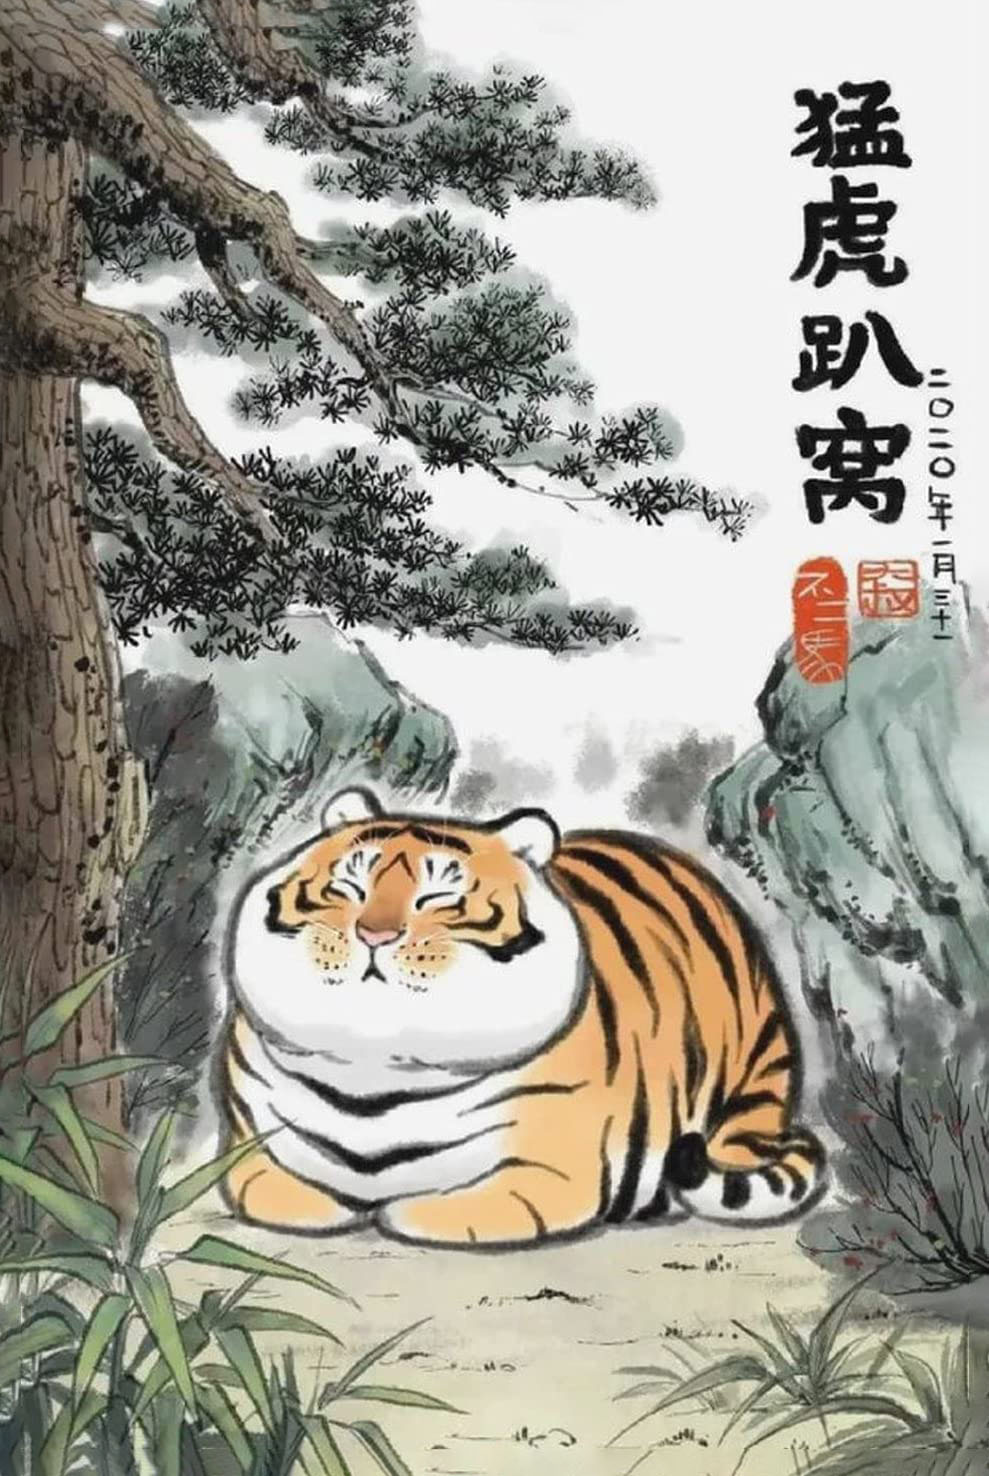 Hình ảnh con hổ béo trong rừng